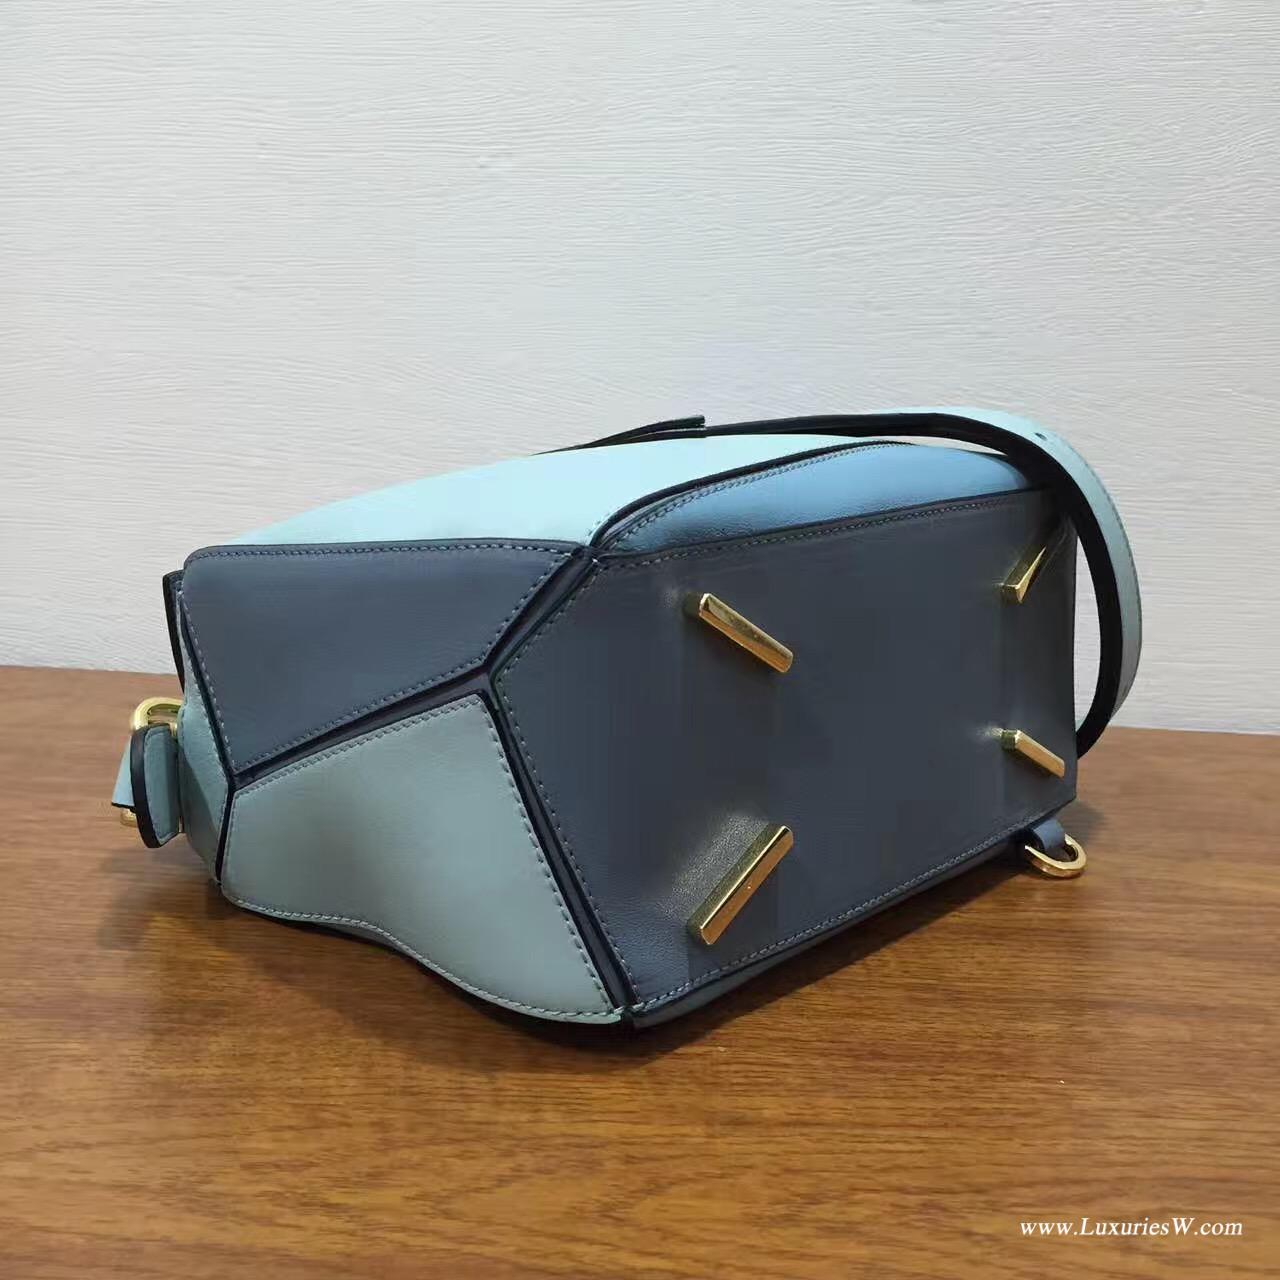 羅意威LOEWE包包 Mini Puzzle Bag 浅蓝色拼色 長方體形狀 折疊幾何包